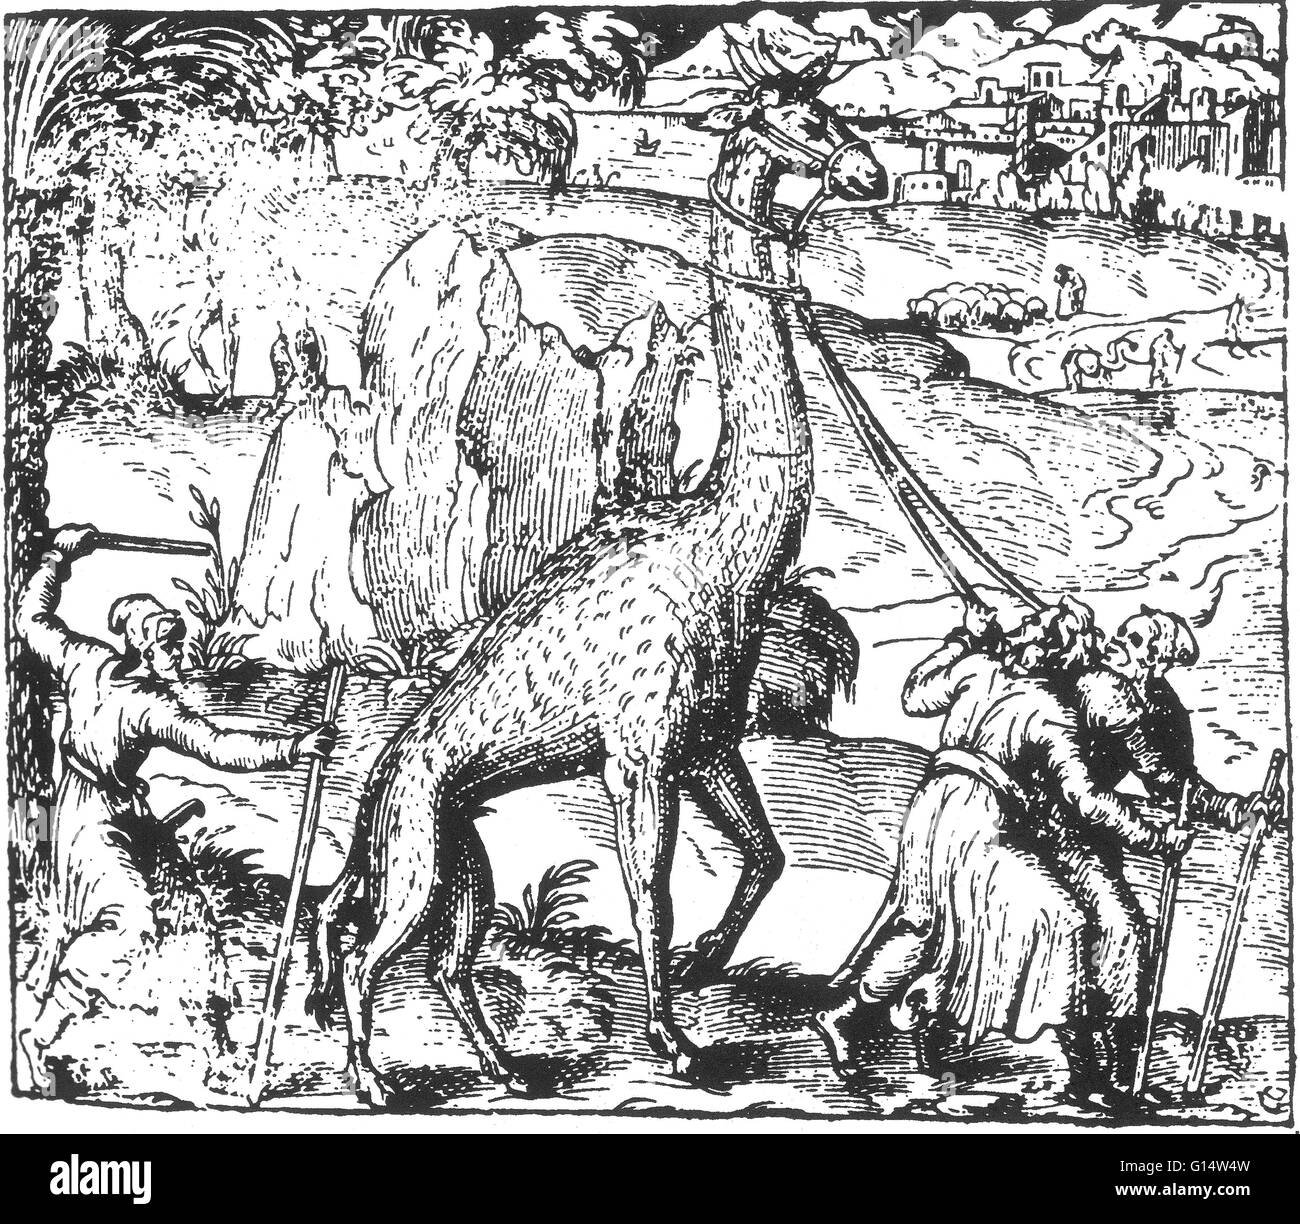 Gravure sur bois d'un 'girafe' à partir des monstres et prodiges d'Ambroise Paré, 1573. Des monstres est rempli avec des comptes du sea devils, truies, marine et d'animaux monstrueux avec des visages humains. Fort de son analyse de la reproduction et illustr Banque D'Images